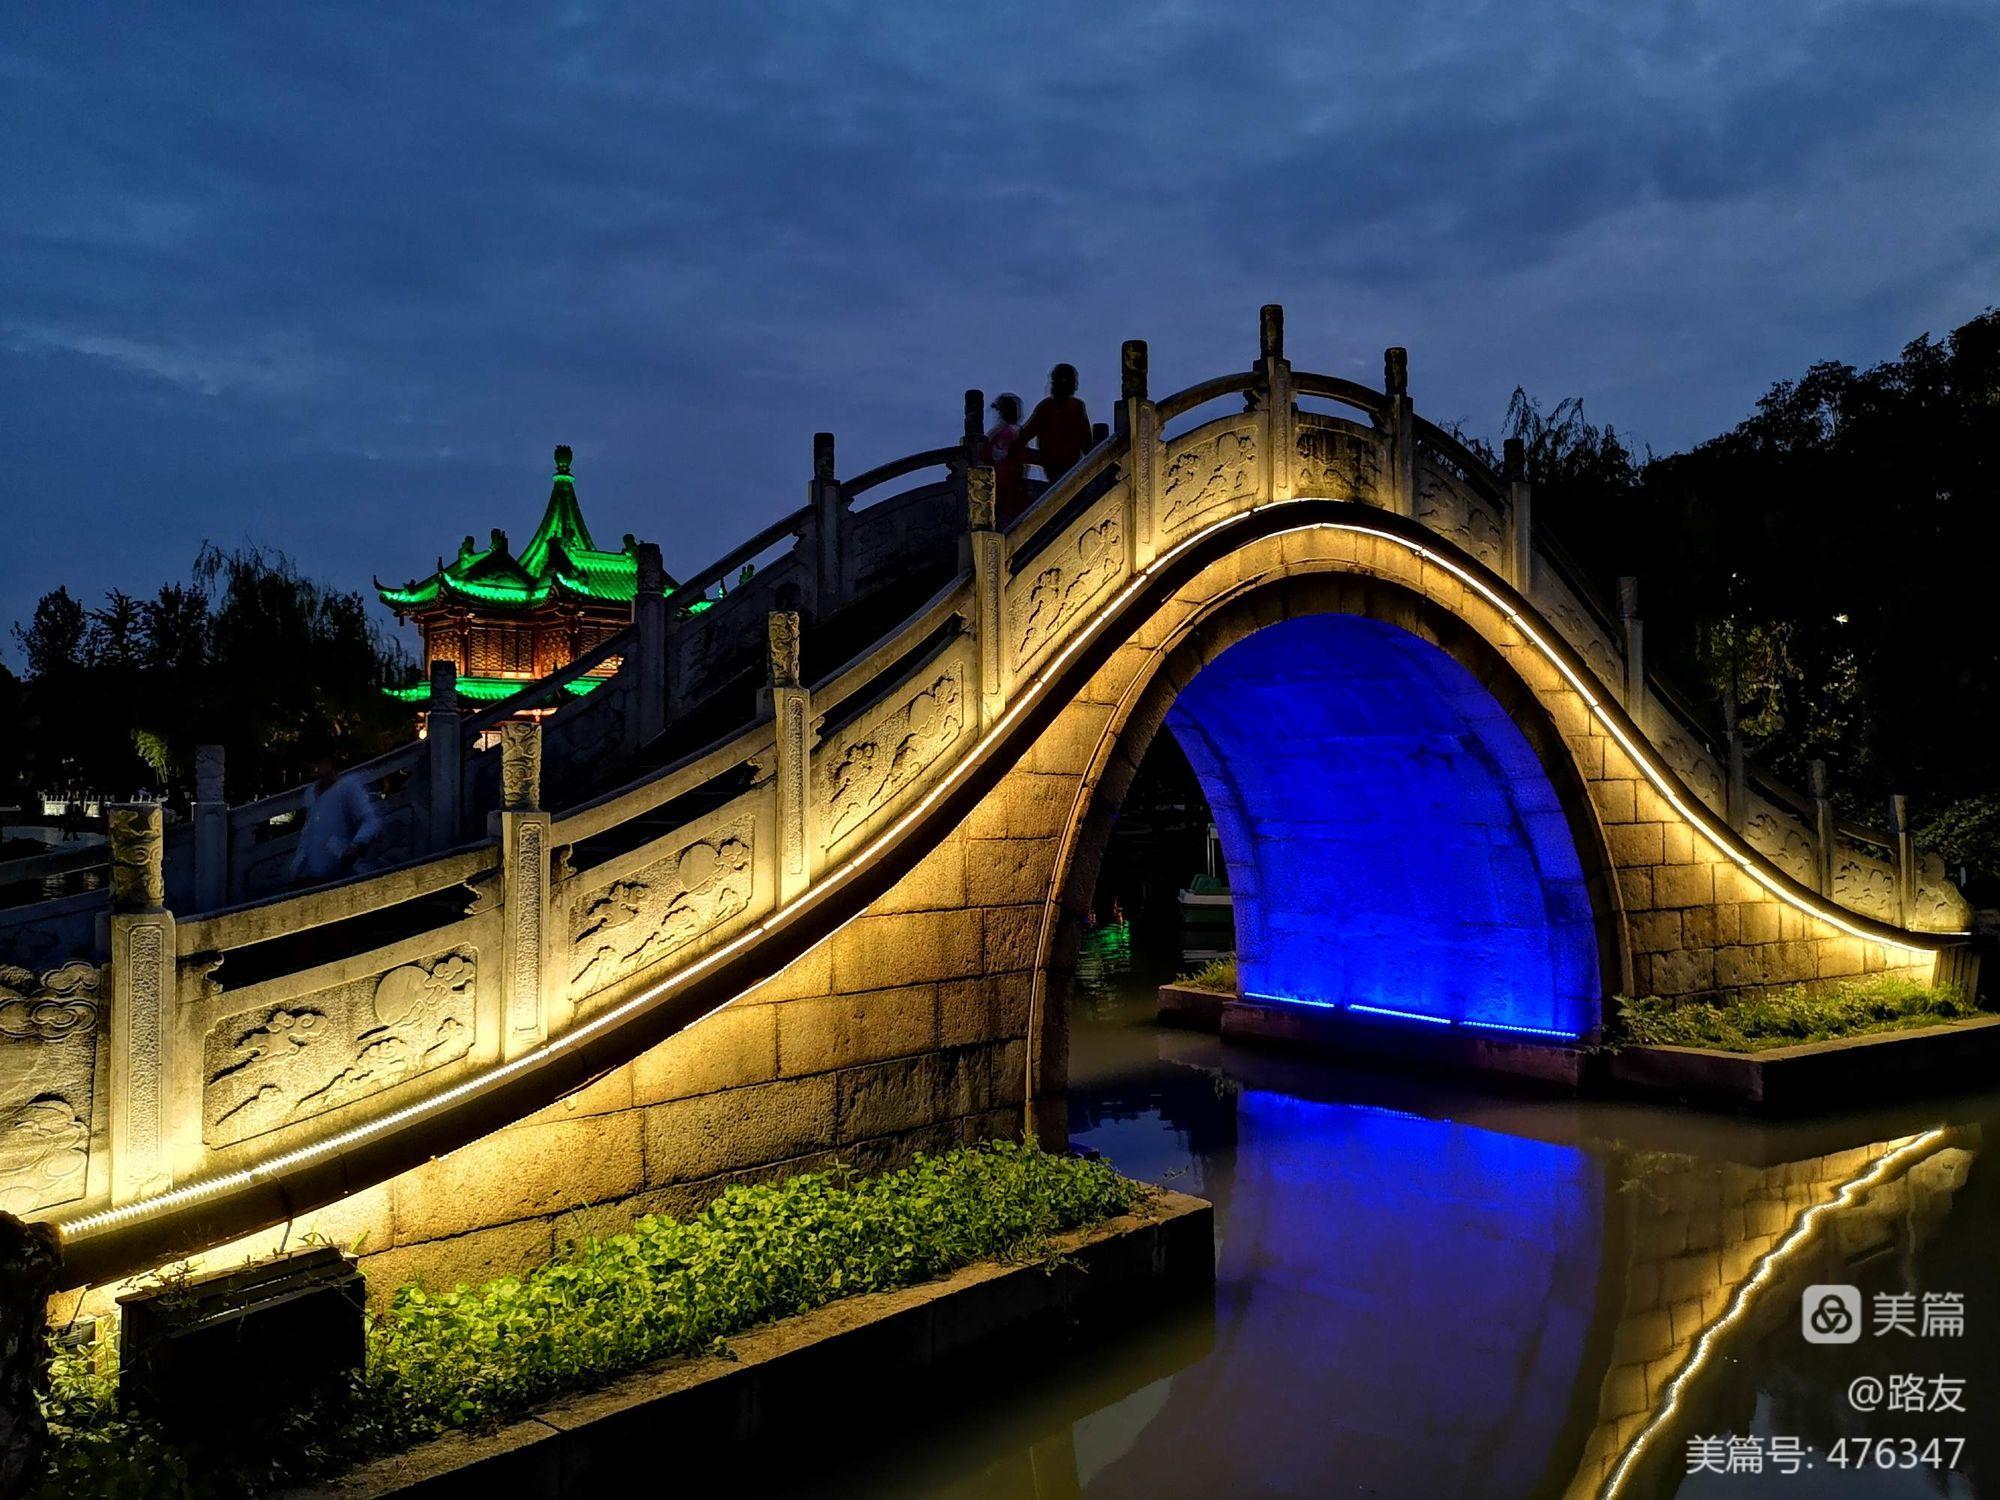 二十四桥明月夜的二十四桥是扬州著名景点_二十四桥明月夜的二十四桥是扬州著名景点_二十四桥明月夜的二十四桥是扬州著名景点